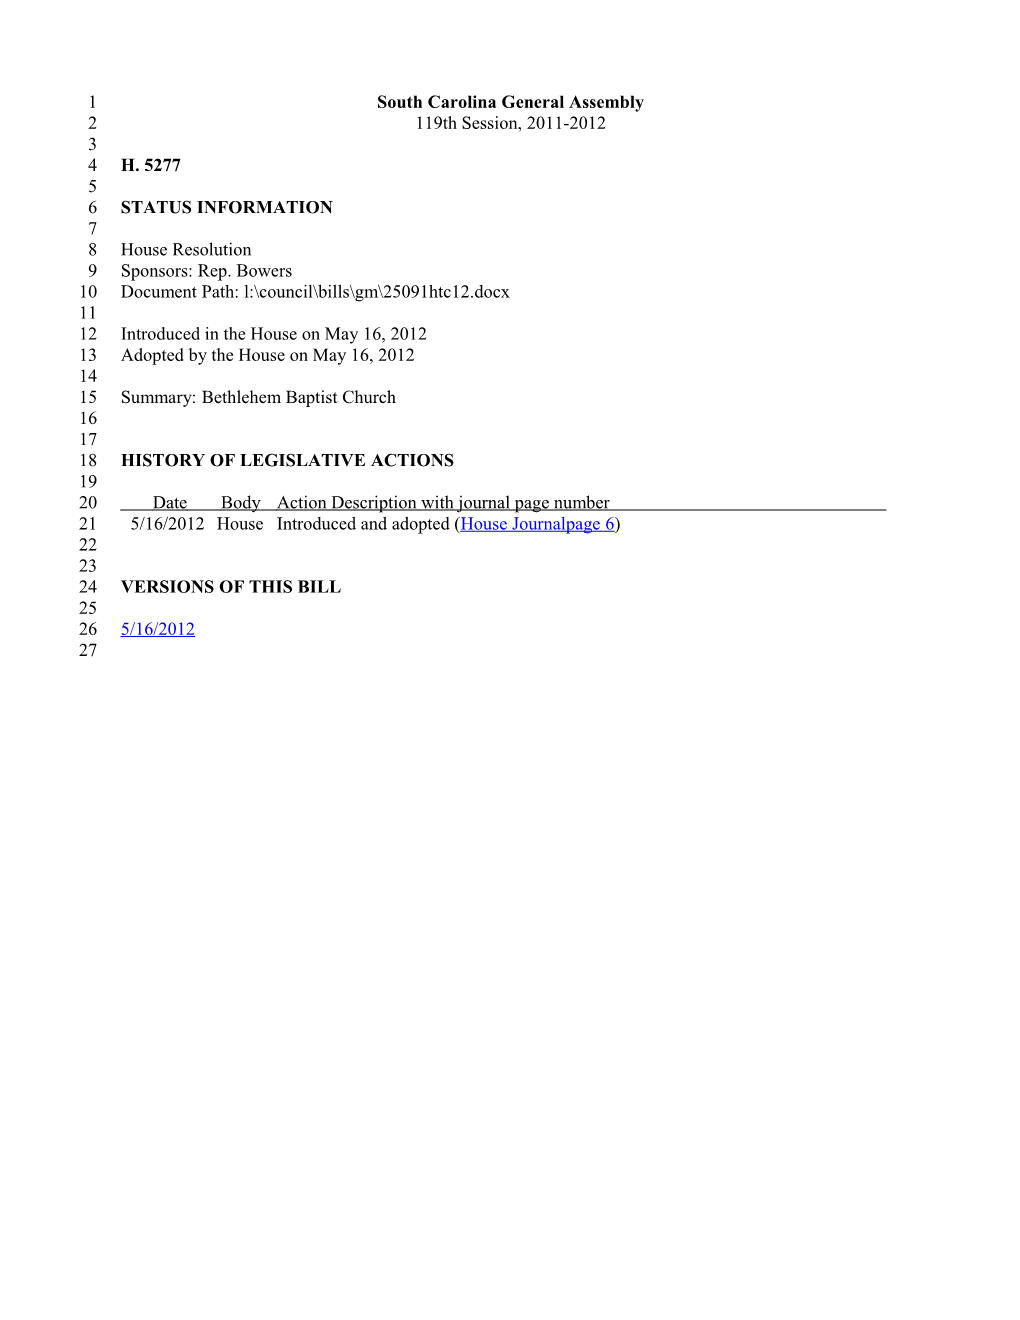 2011-2012 Bill 5277: Bethlehem Baptist Church - South Carolina Legislature Online